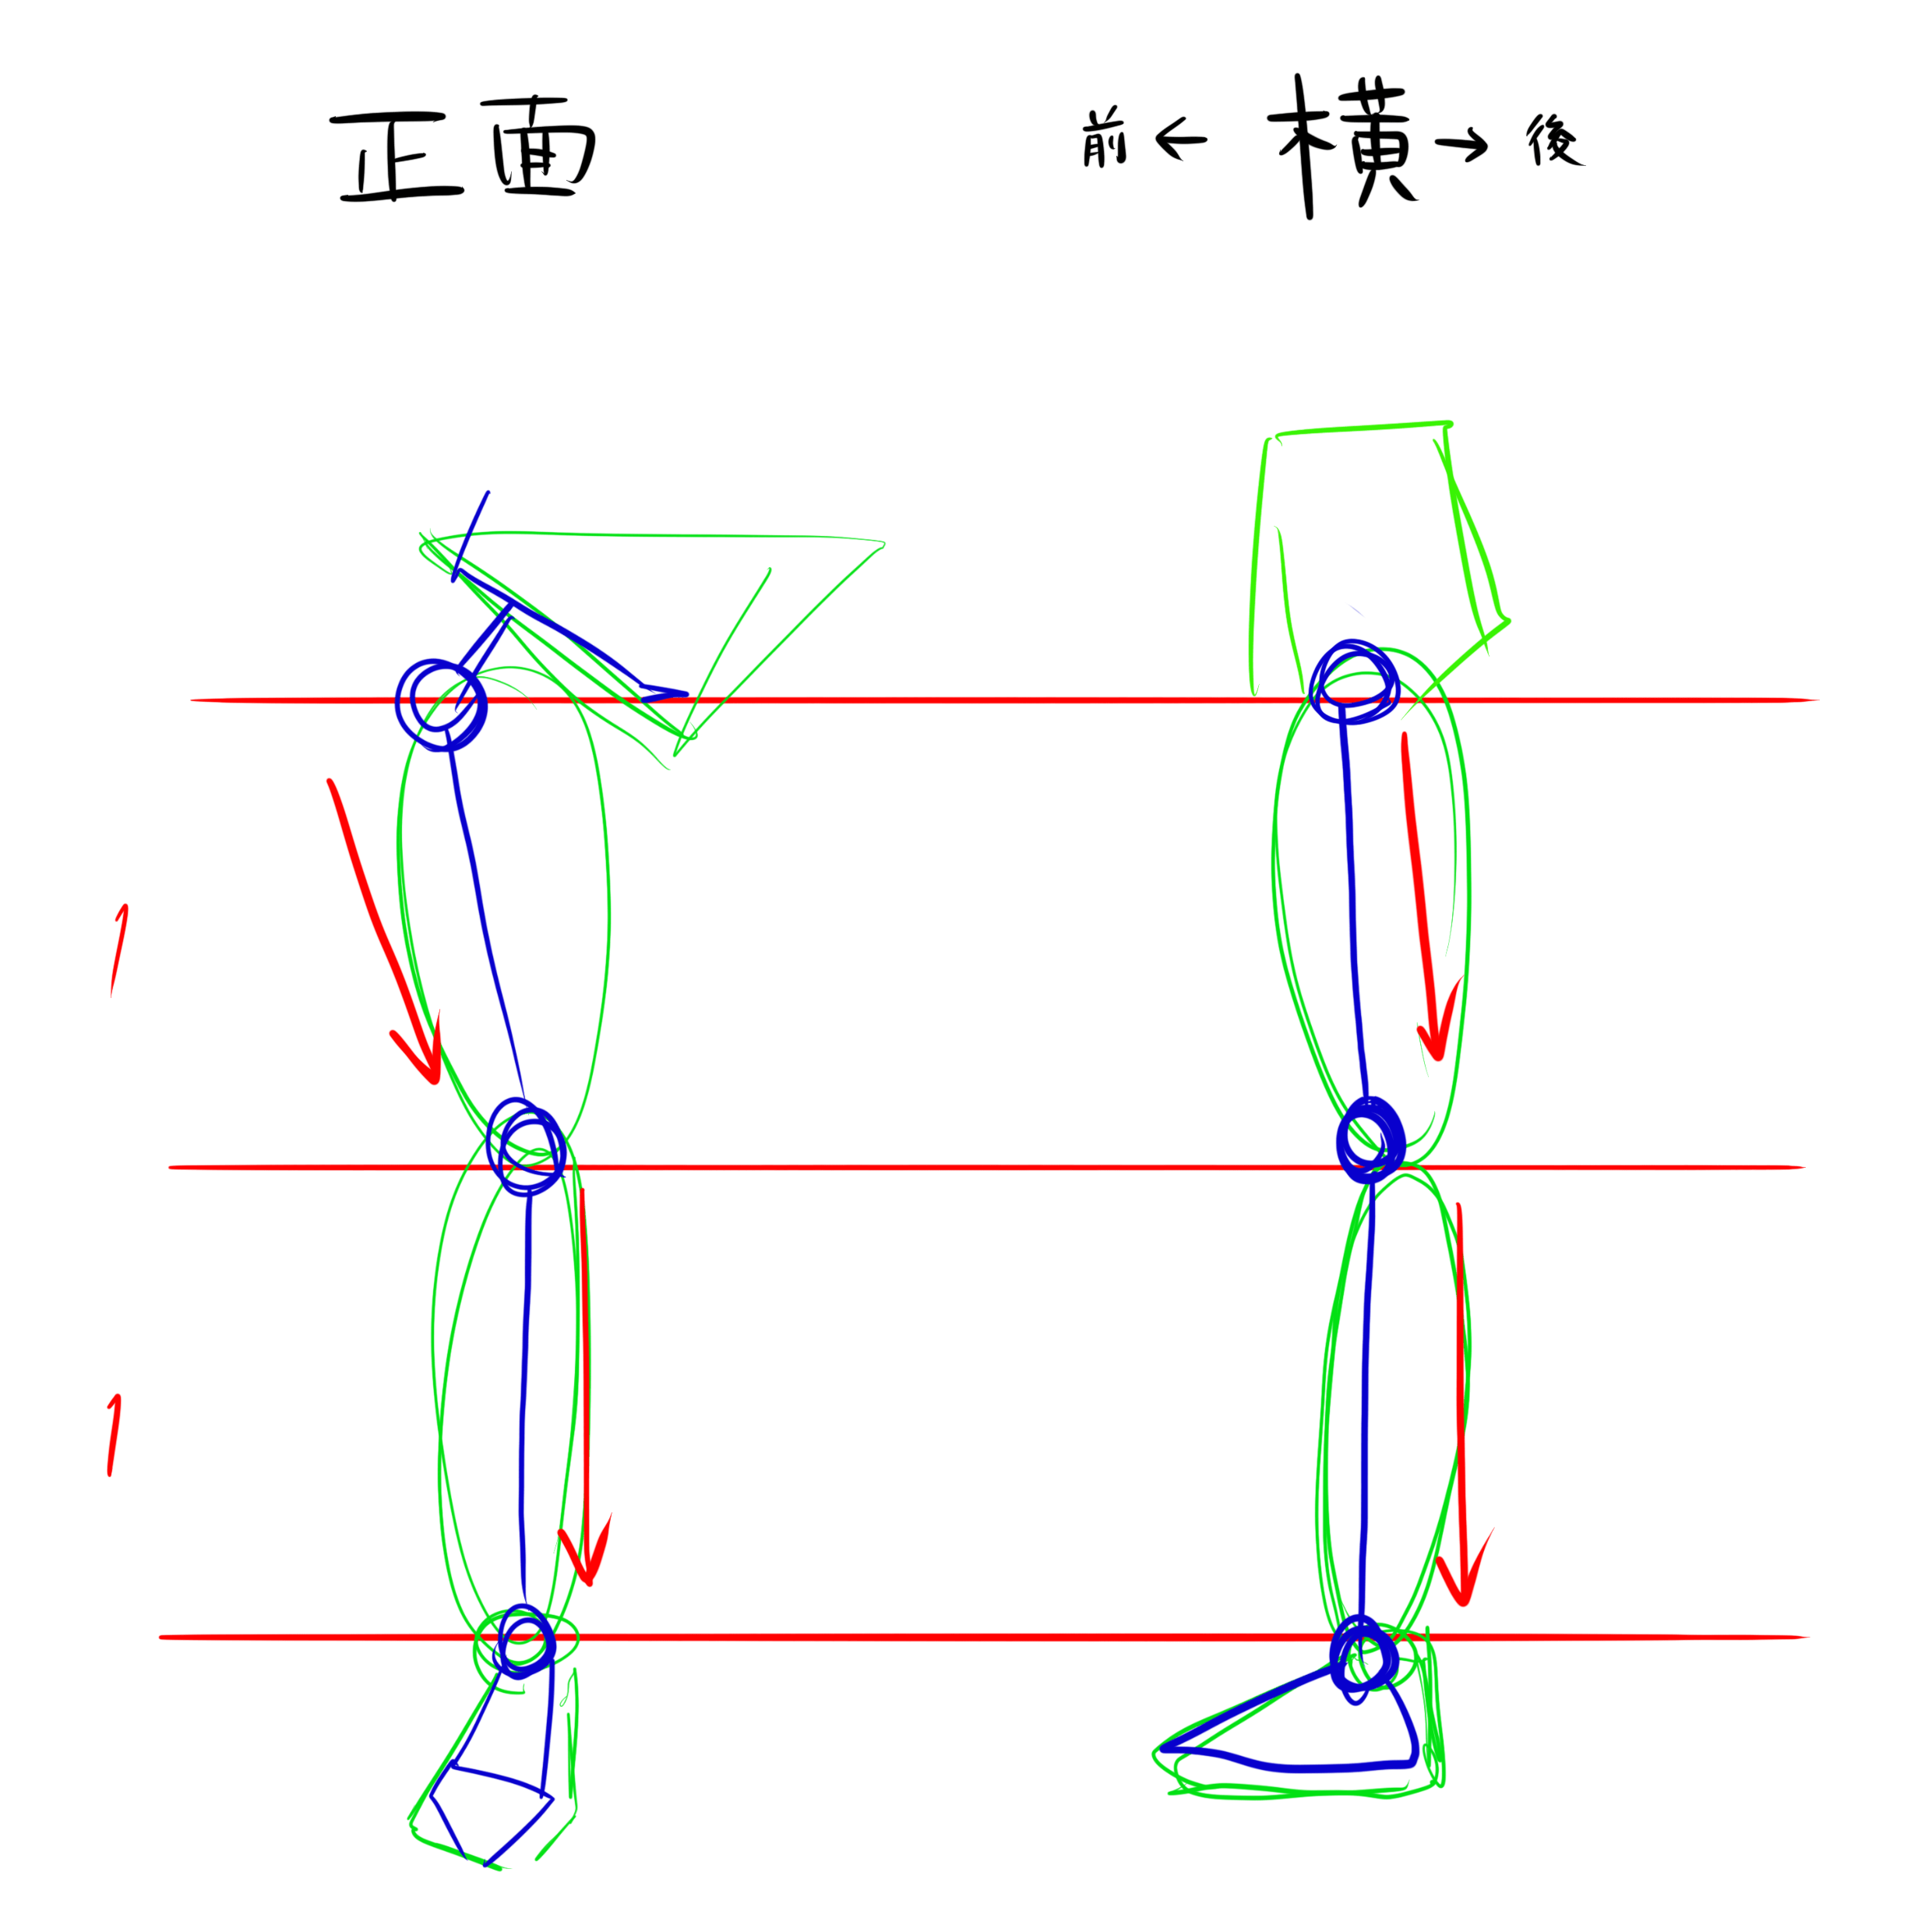 脚の描き方 バランスが難しい 脚の描き方を徹底解説 株式会社esolab